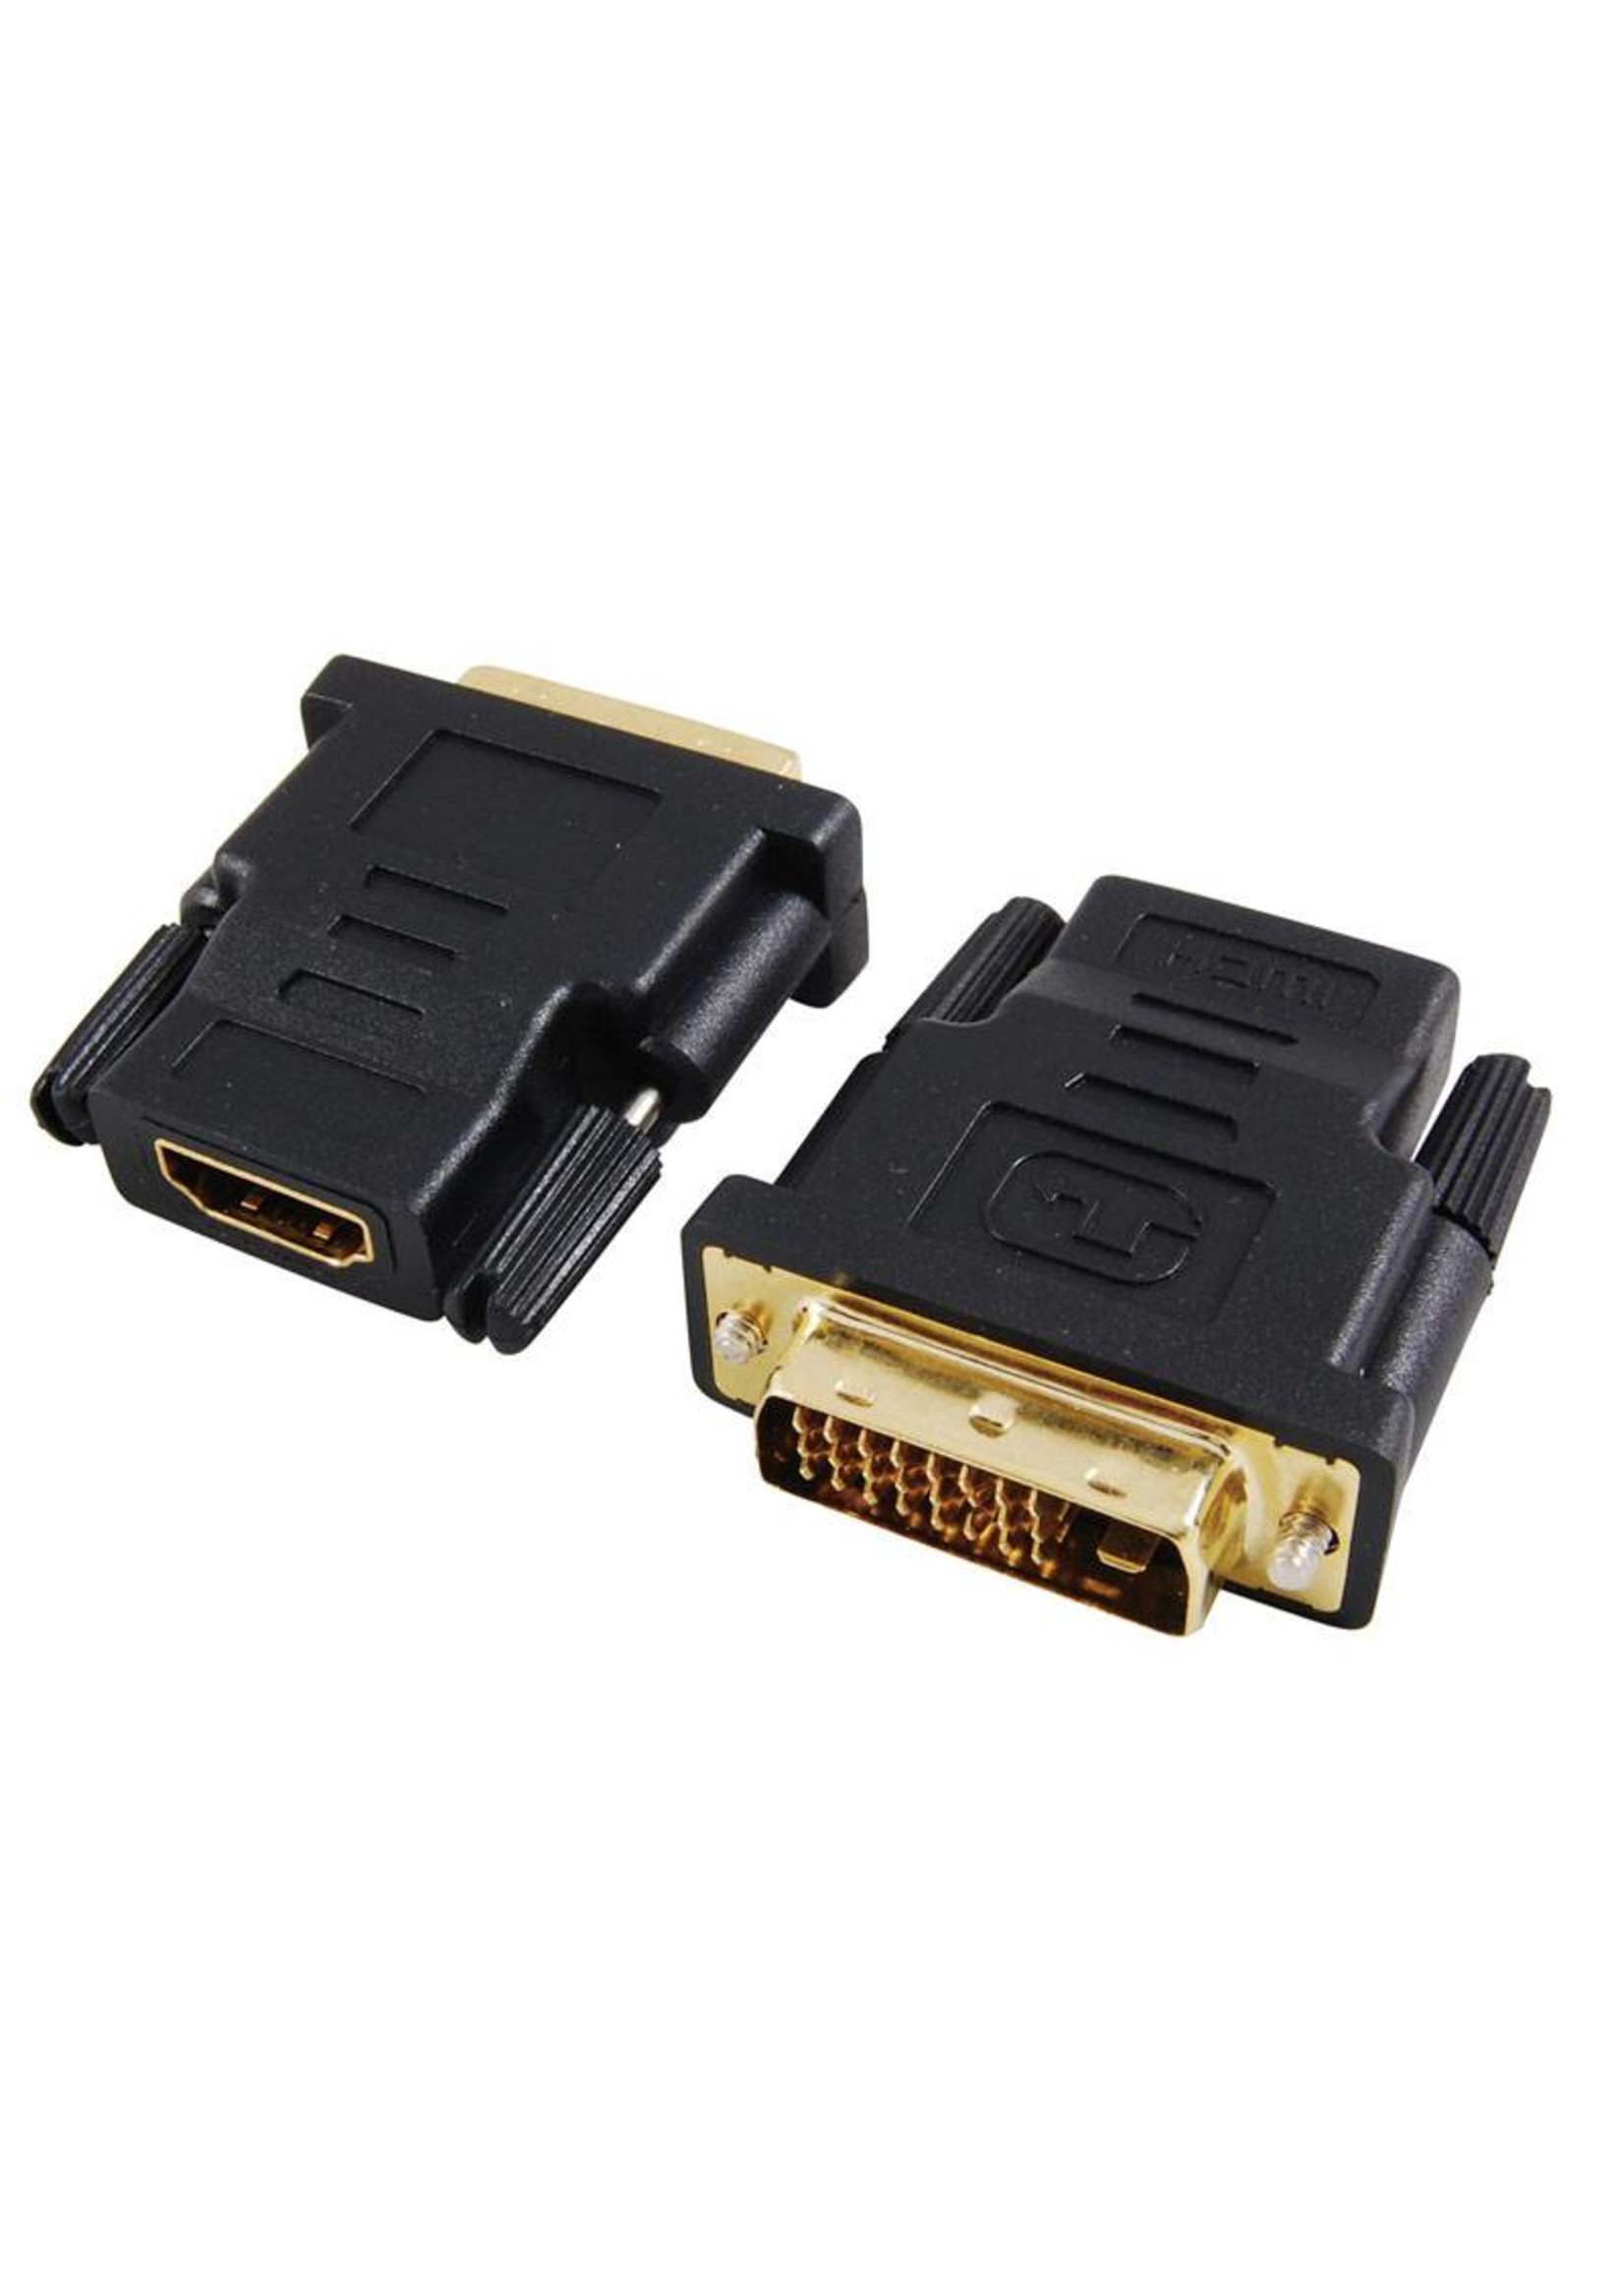 HDMI-Buchse auf 24+1 DVI-Stecker-Adapter